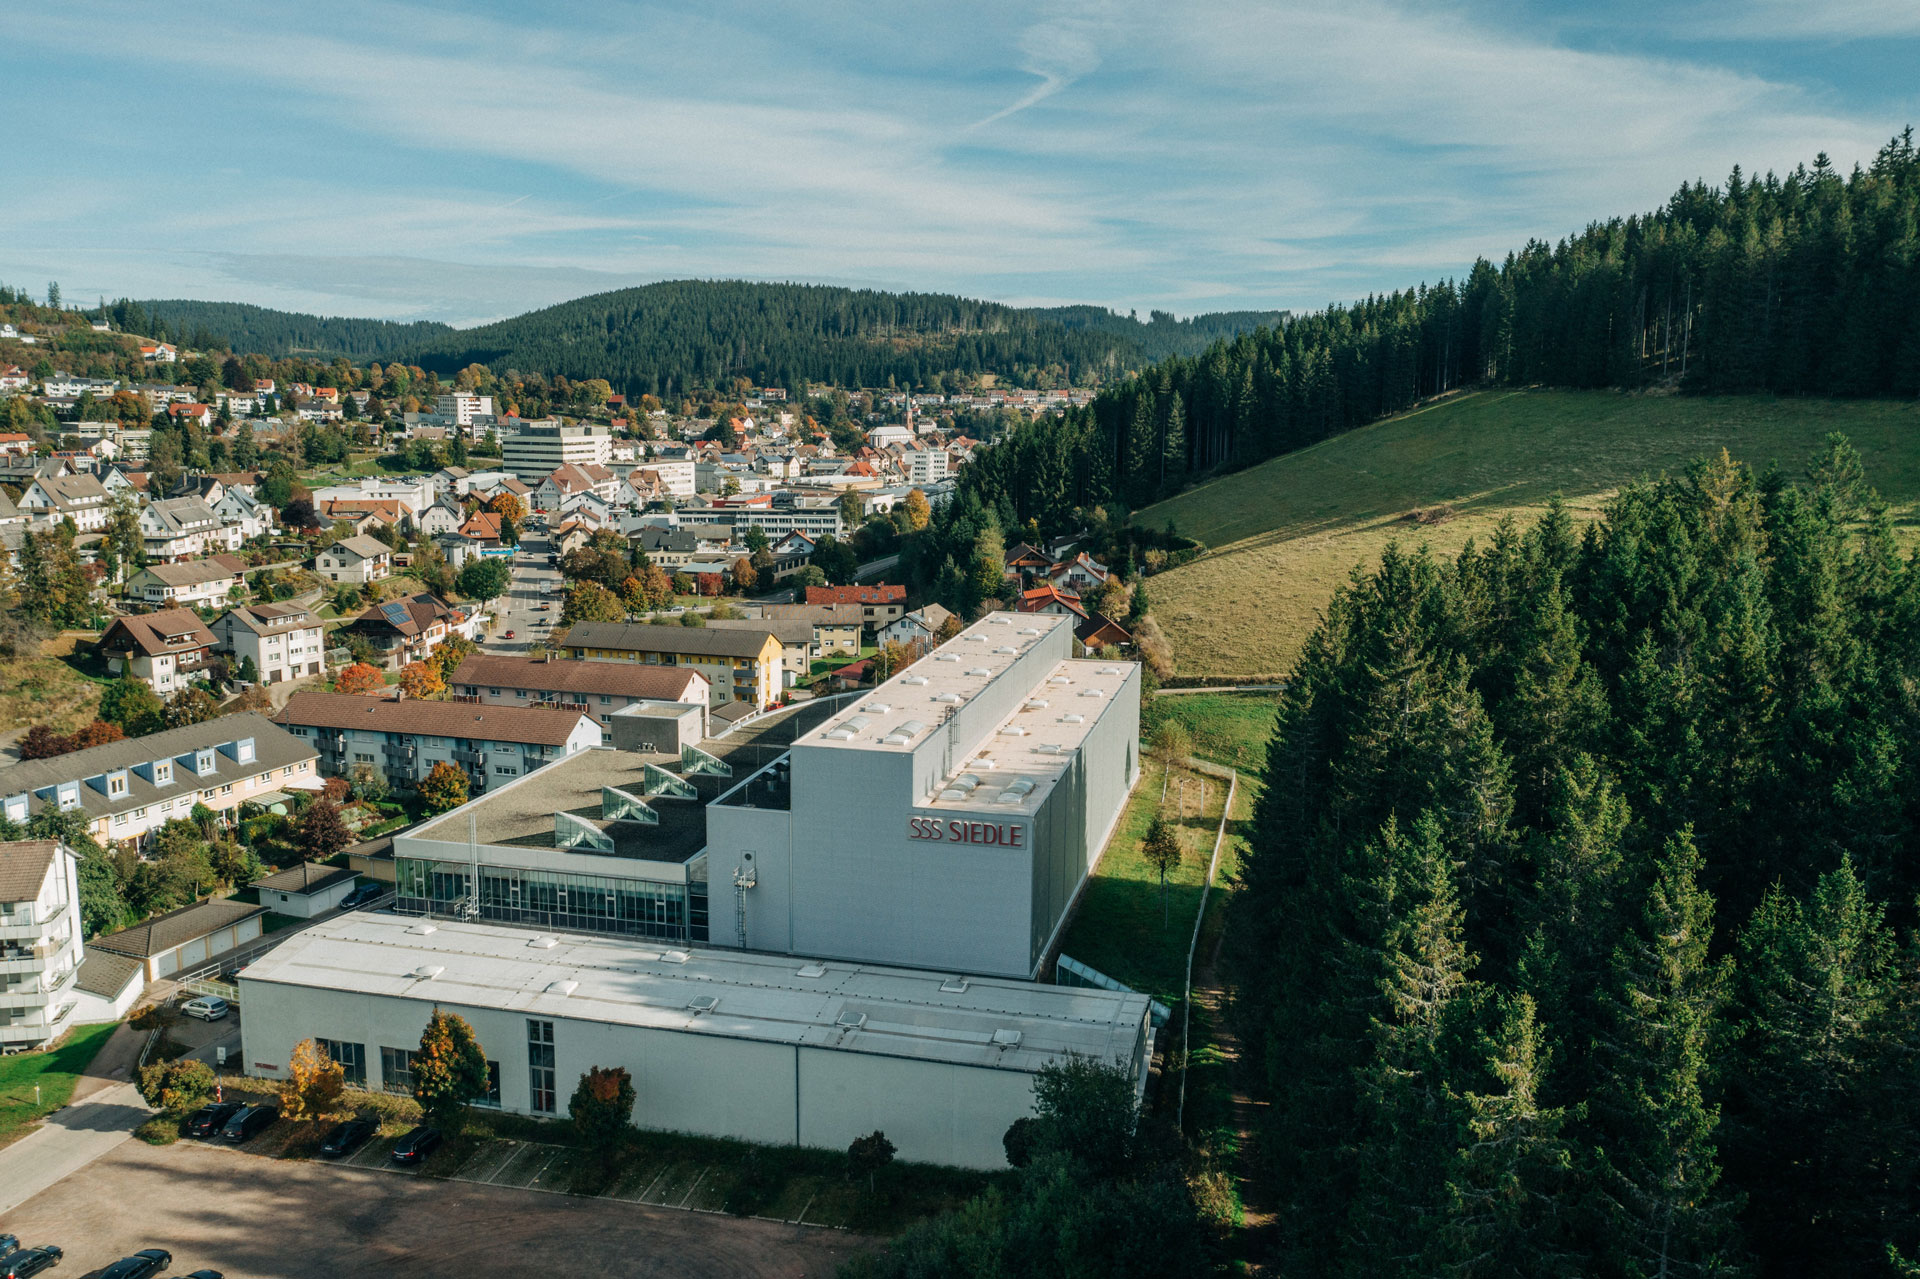 A bird's eye view of the Siedle logistics center in Furtwangen